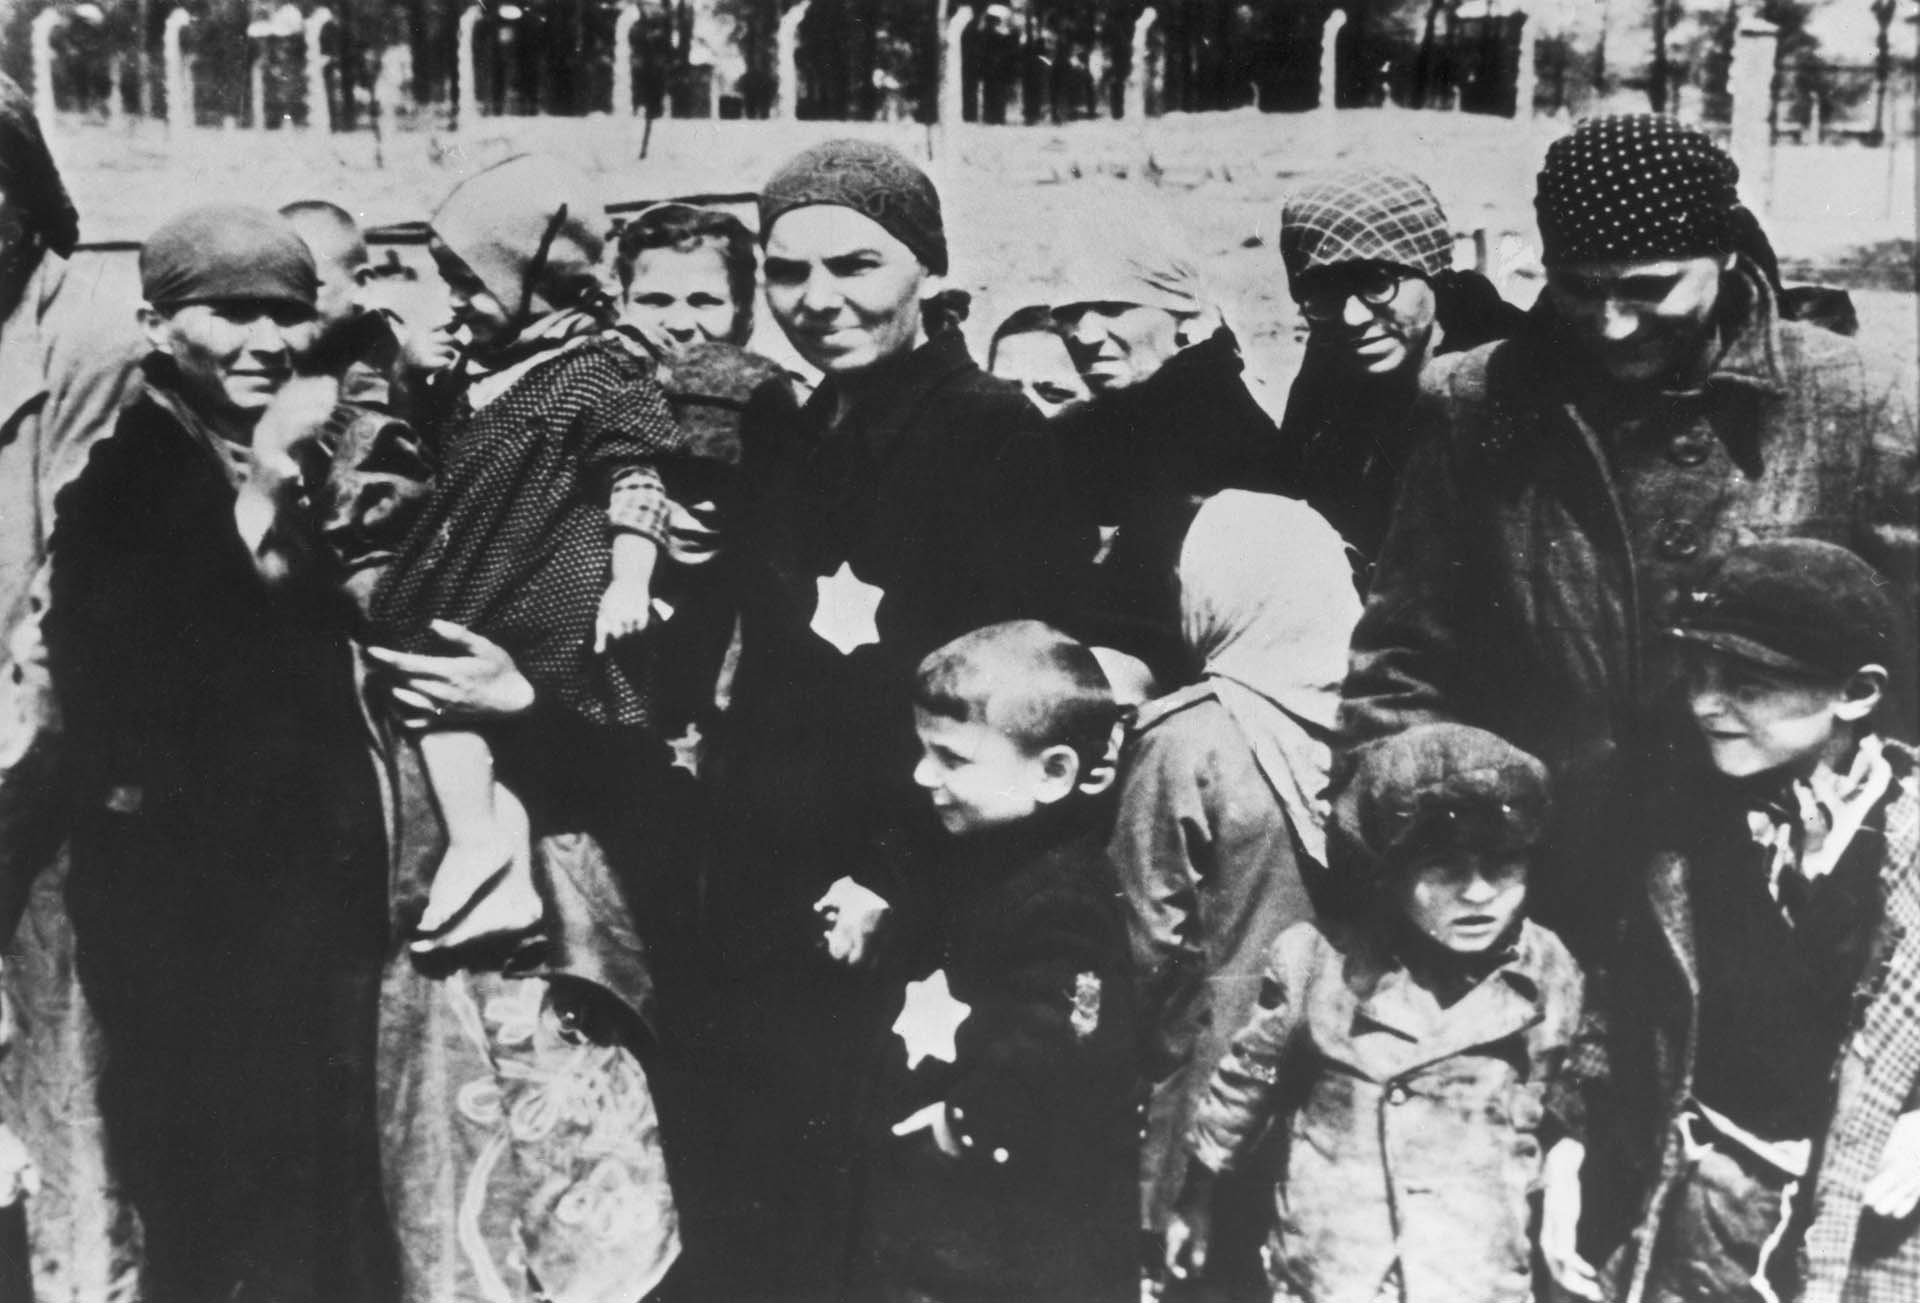 Mujeres y niños judíos, algunos llevando sobre sus ropas la estrella de David, en el anden del campo de concentración de Auschwitz.  Allí Mengele seleccionaba a quienes pasaban de inmediato a las cámaras de gas (Hulton Archive/Getty Images)